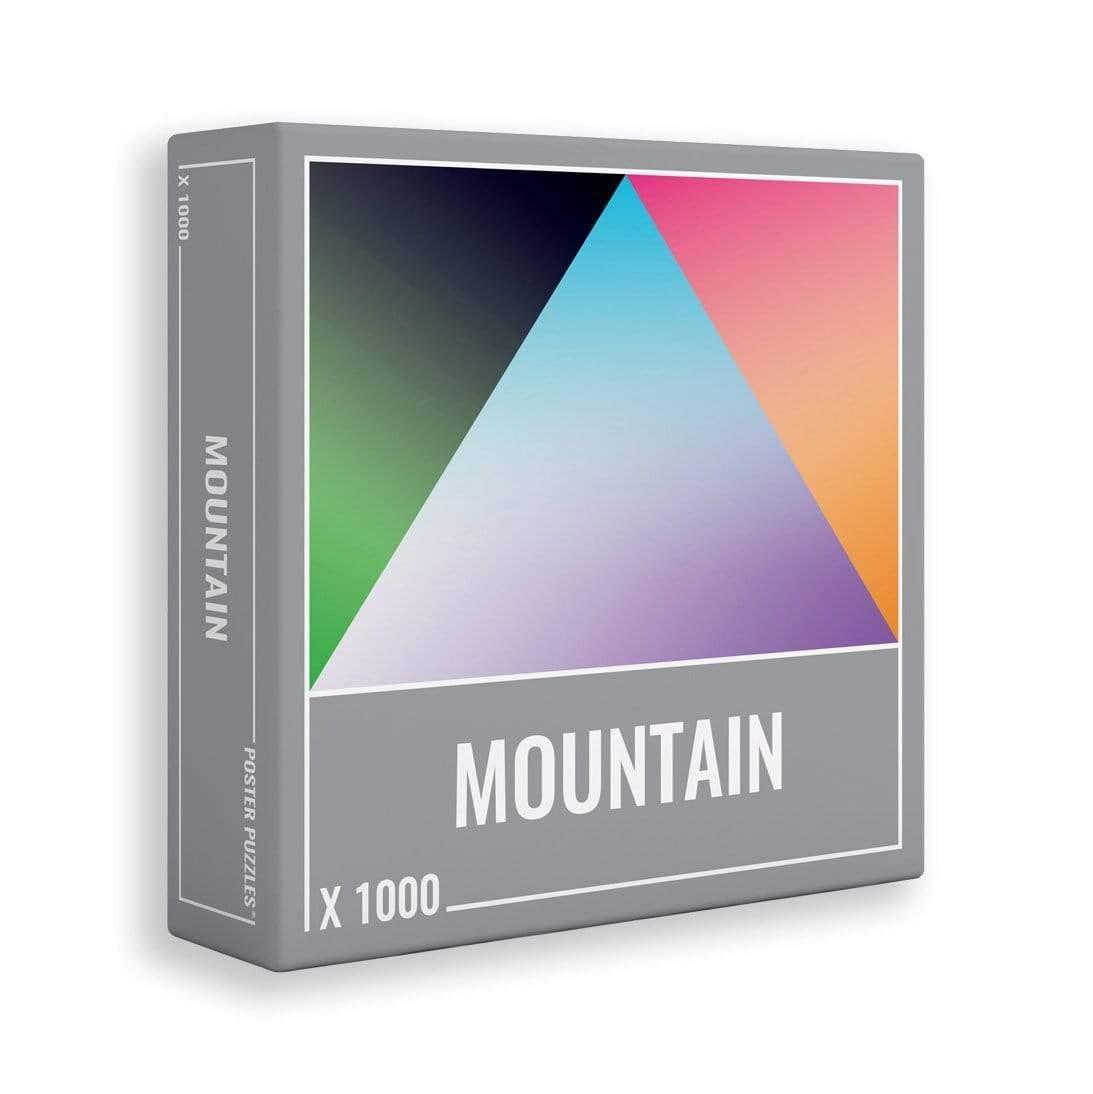 لعبة تطبيقات لوحة الجبال 1000 قطعة Cloudberries - MOUNTAIN - cG9zdDo1NjcxMA==